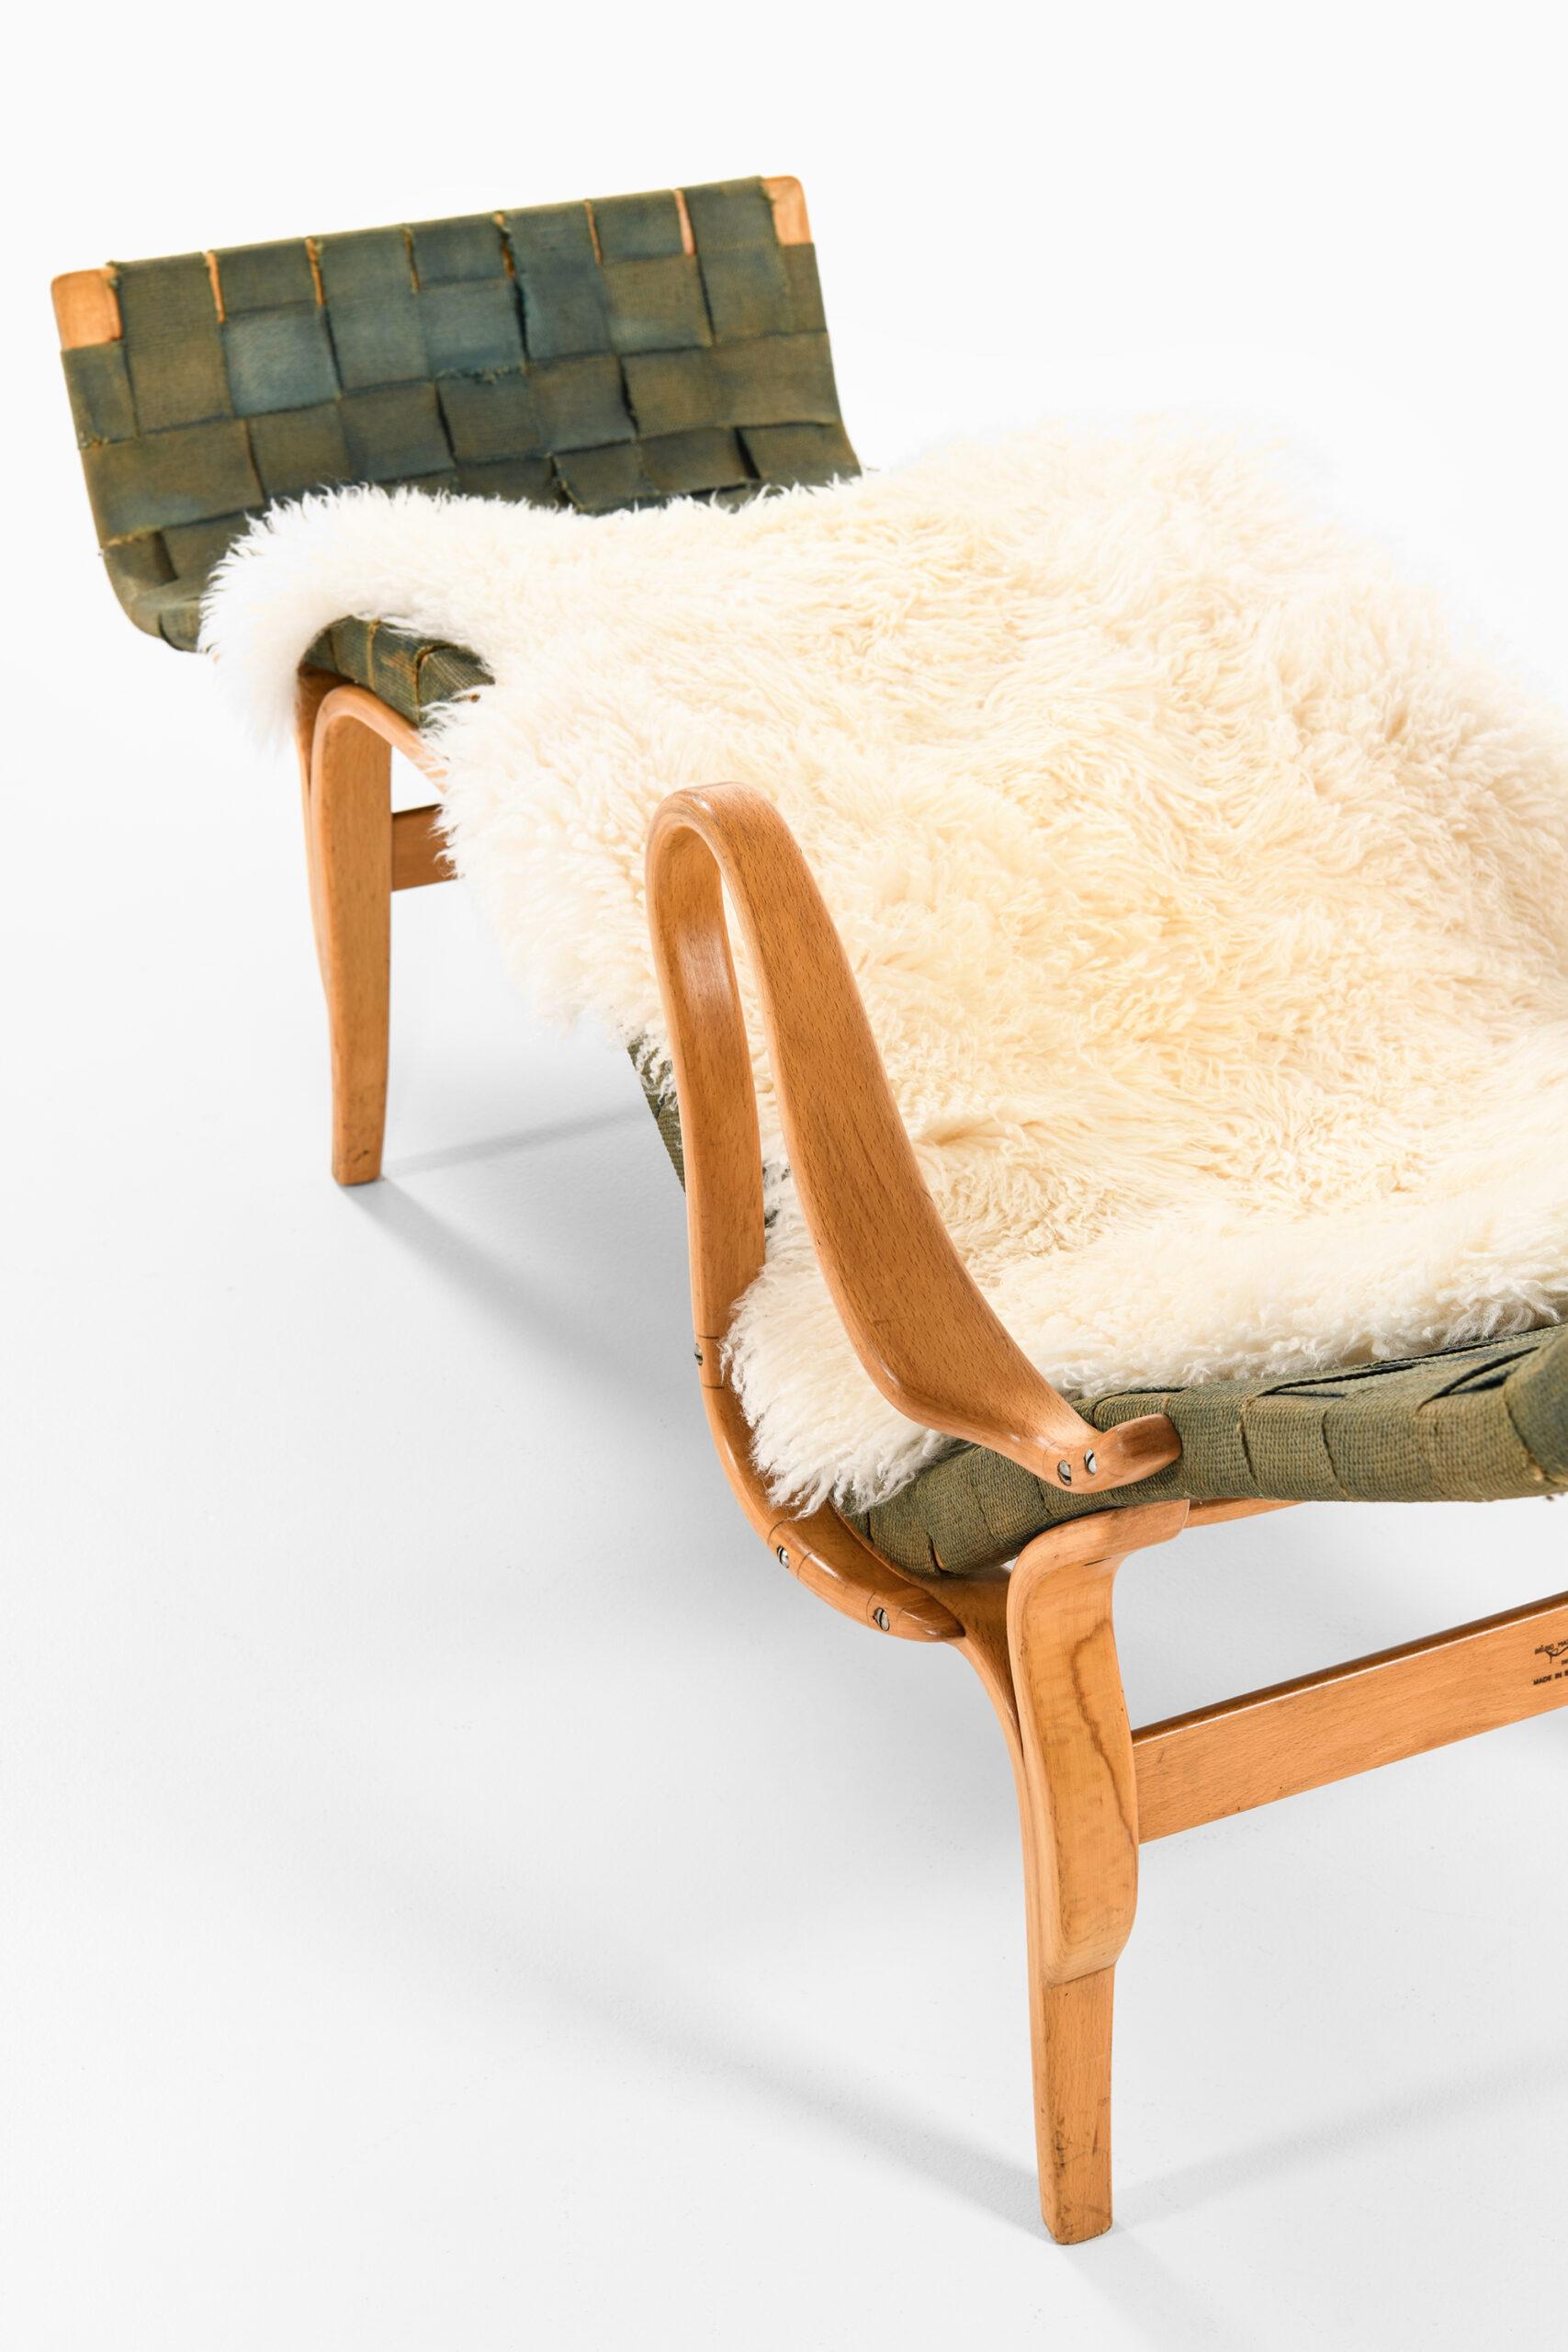 Swedish Bruno Mathsson Lounge Chair Model Pernilla 3 / T-108 by Karl Mathsson in Värnamo